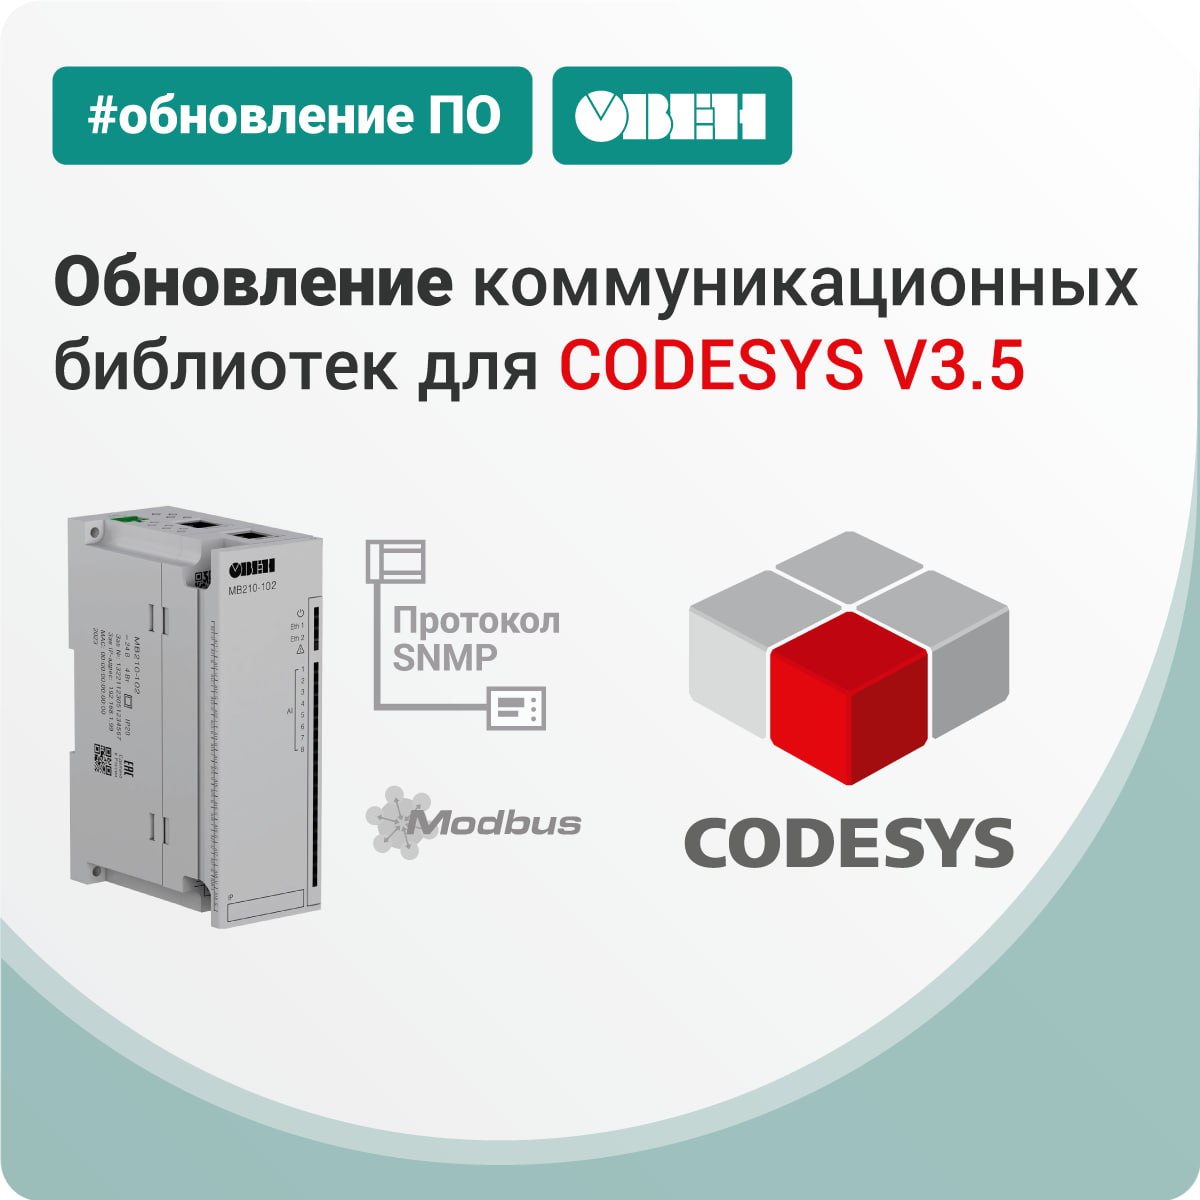 CODESYS V3.5